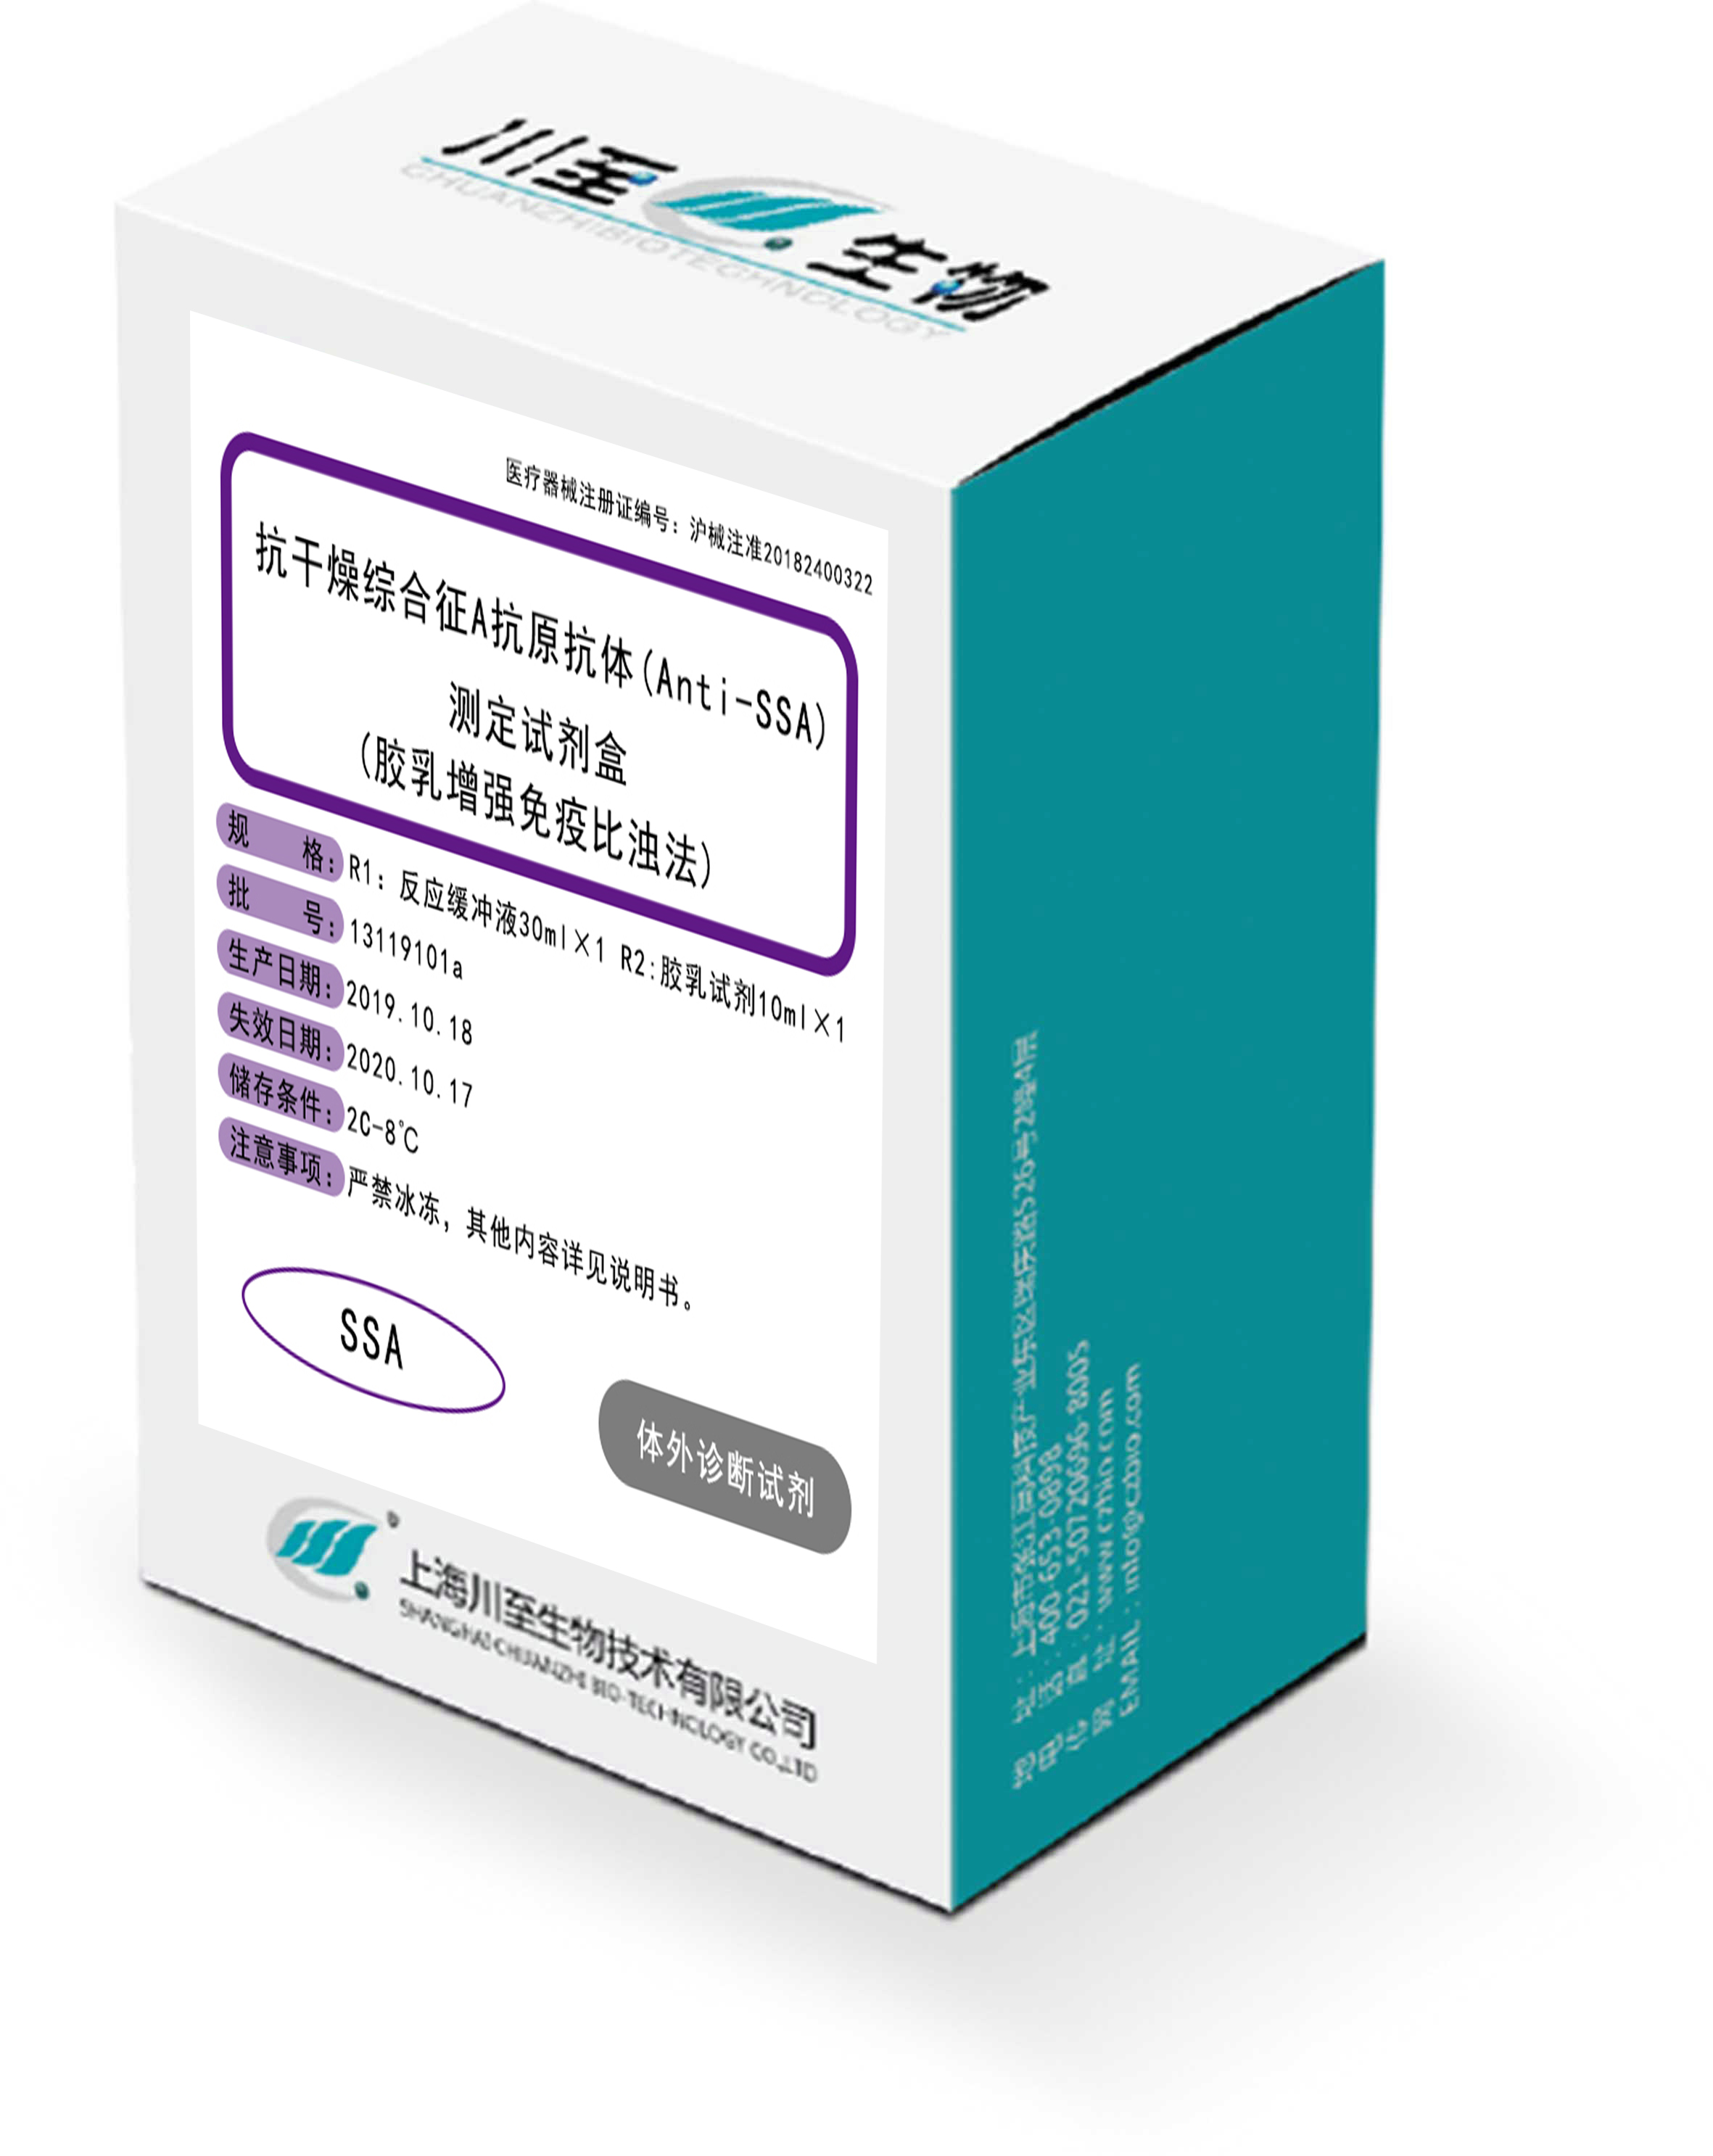 抗干燥綜合征A抗原抗體（Anti-SSA）測定試劑盒